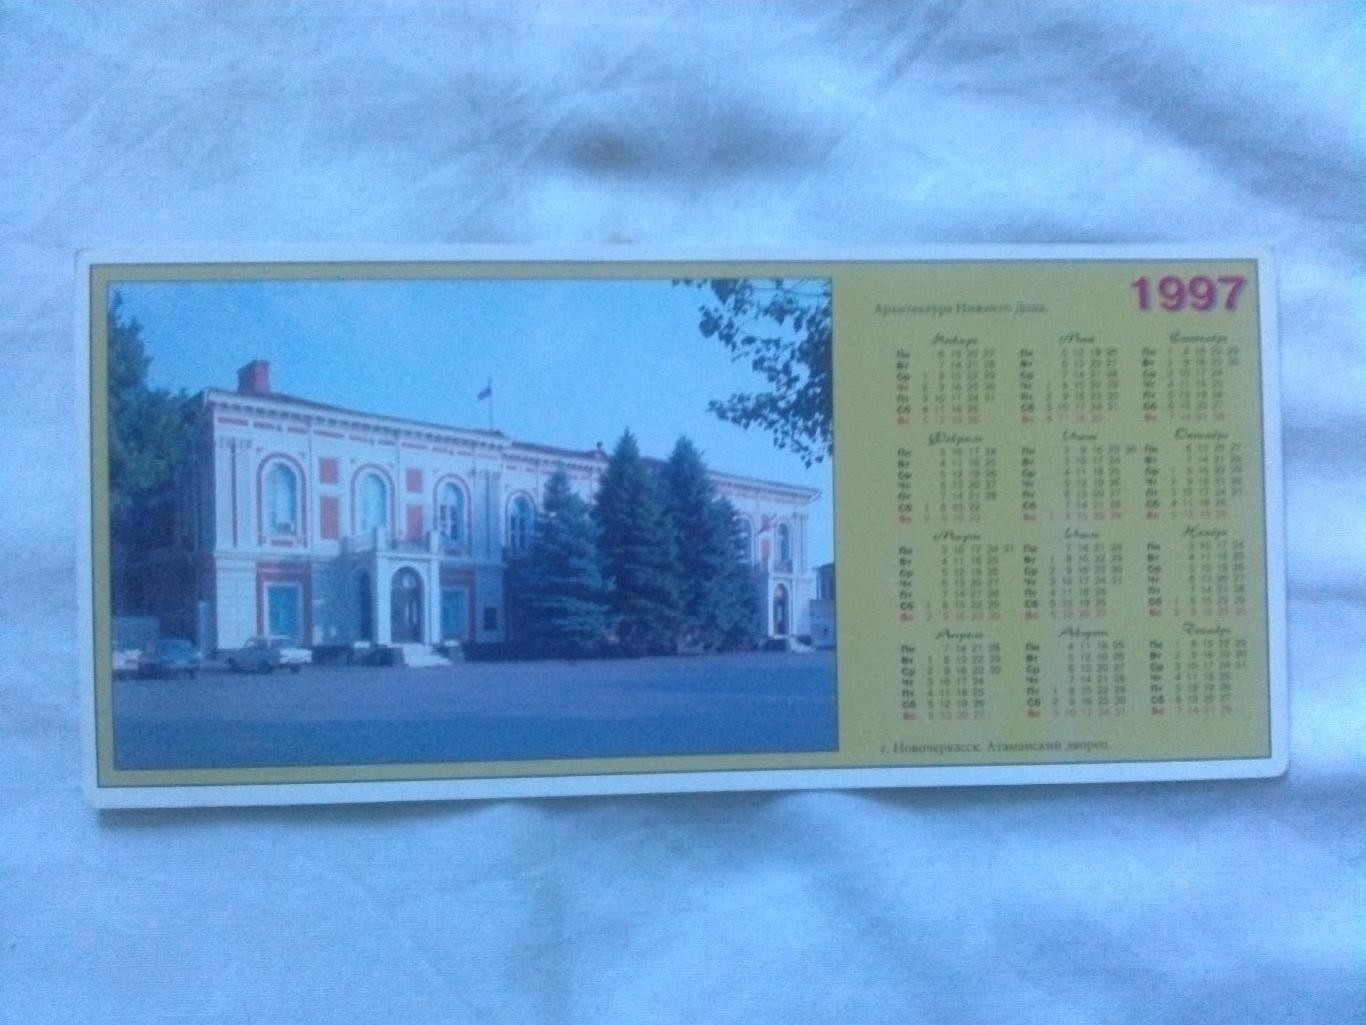 Города России : Новочеркасск 1997 г. Атаманский дворец (Ростовская область)